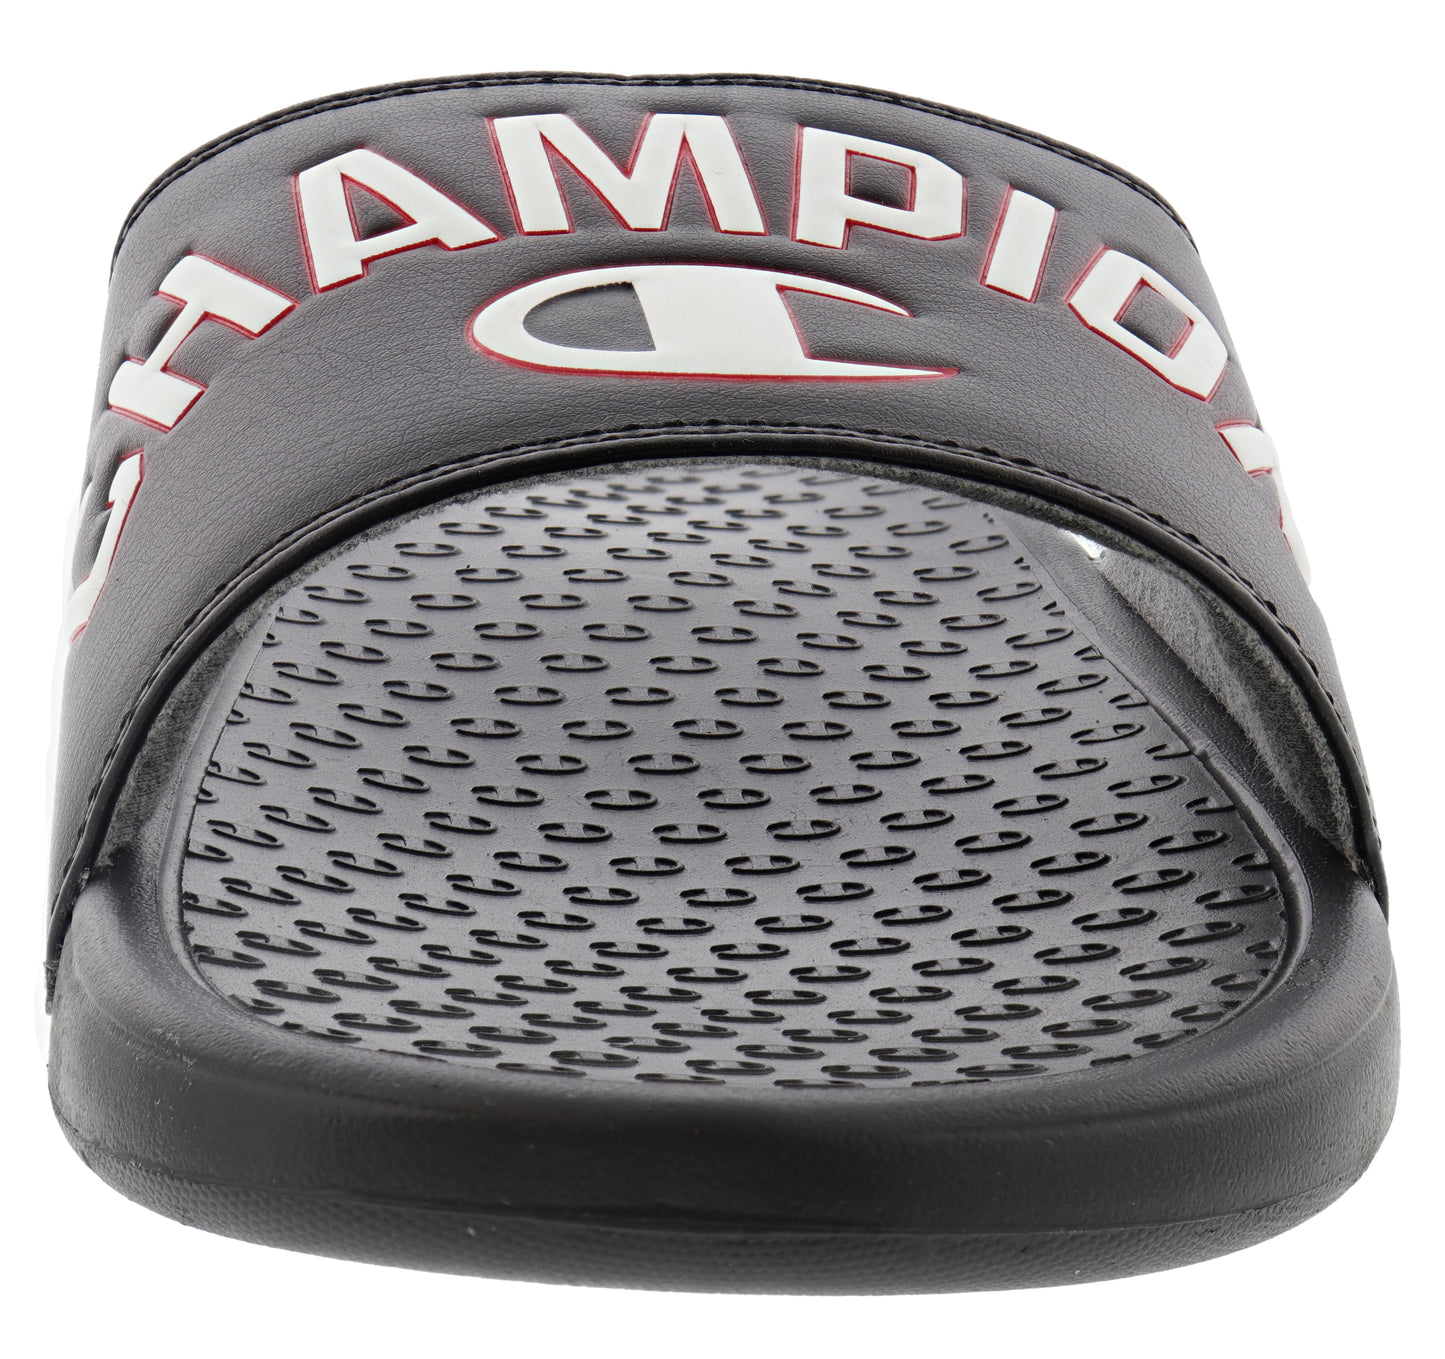 
                  
                    Champion Men's Club Slide Slip On Sandals
                  
                